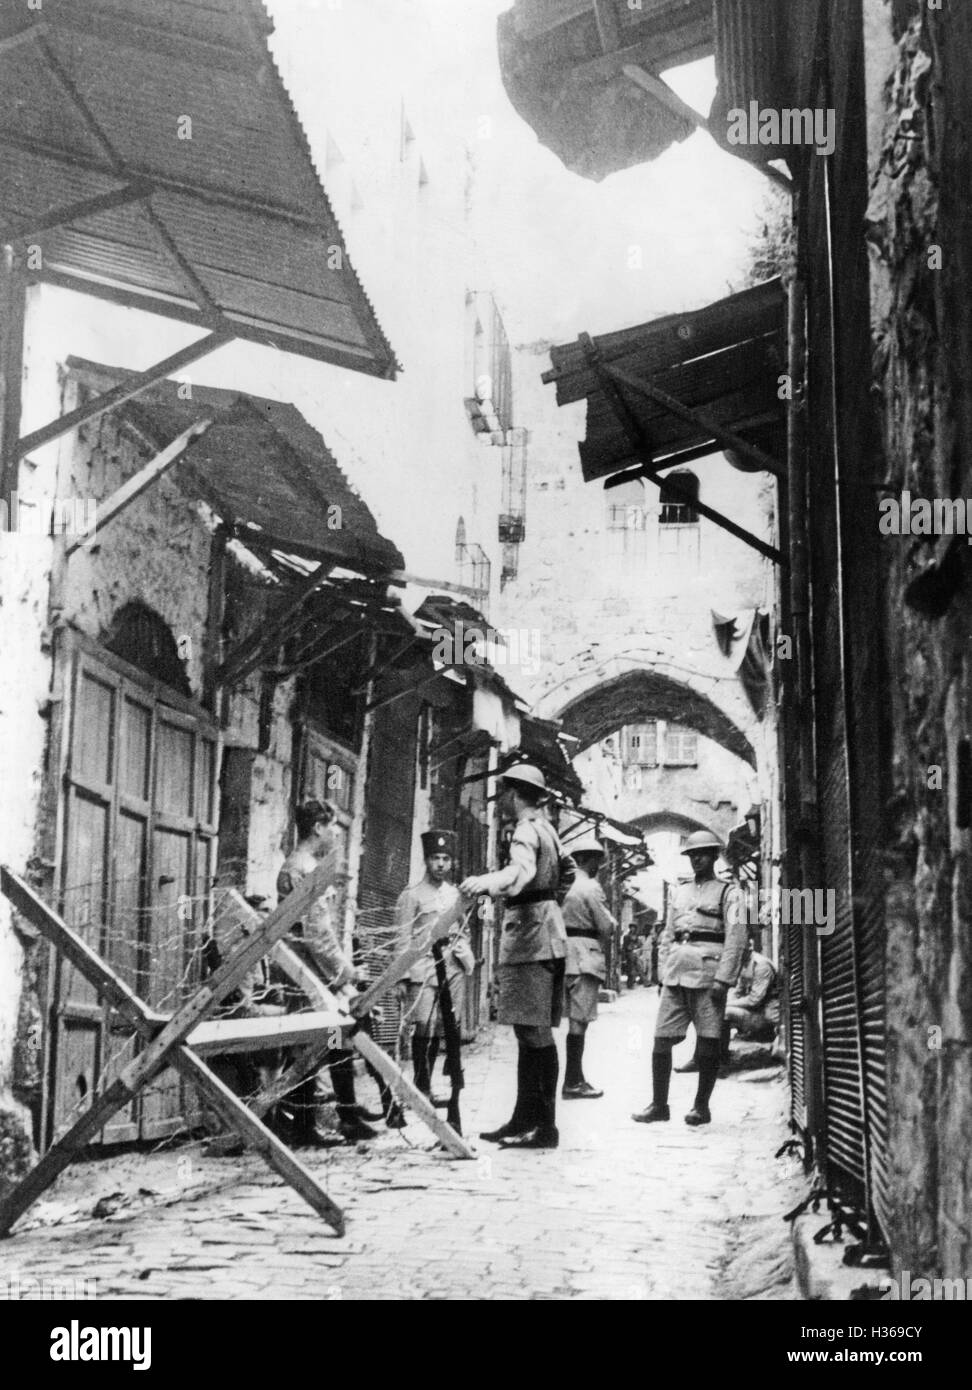 British delle forze di sicurezza nella città vecchia di Gerusalemme, 1936 Foto Stock